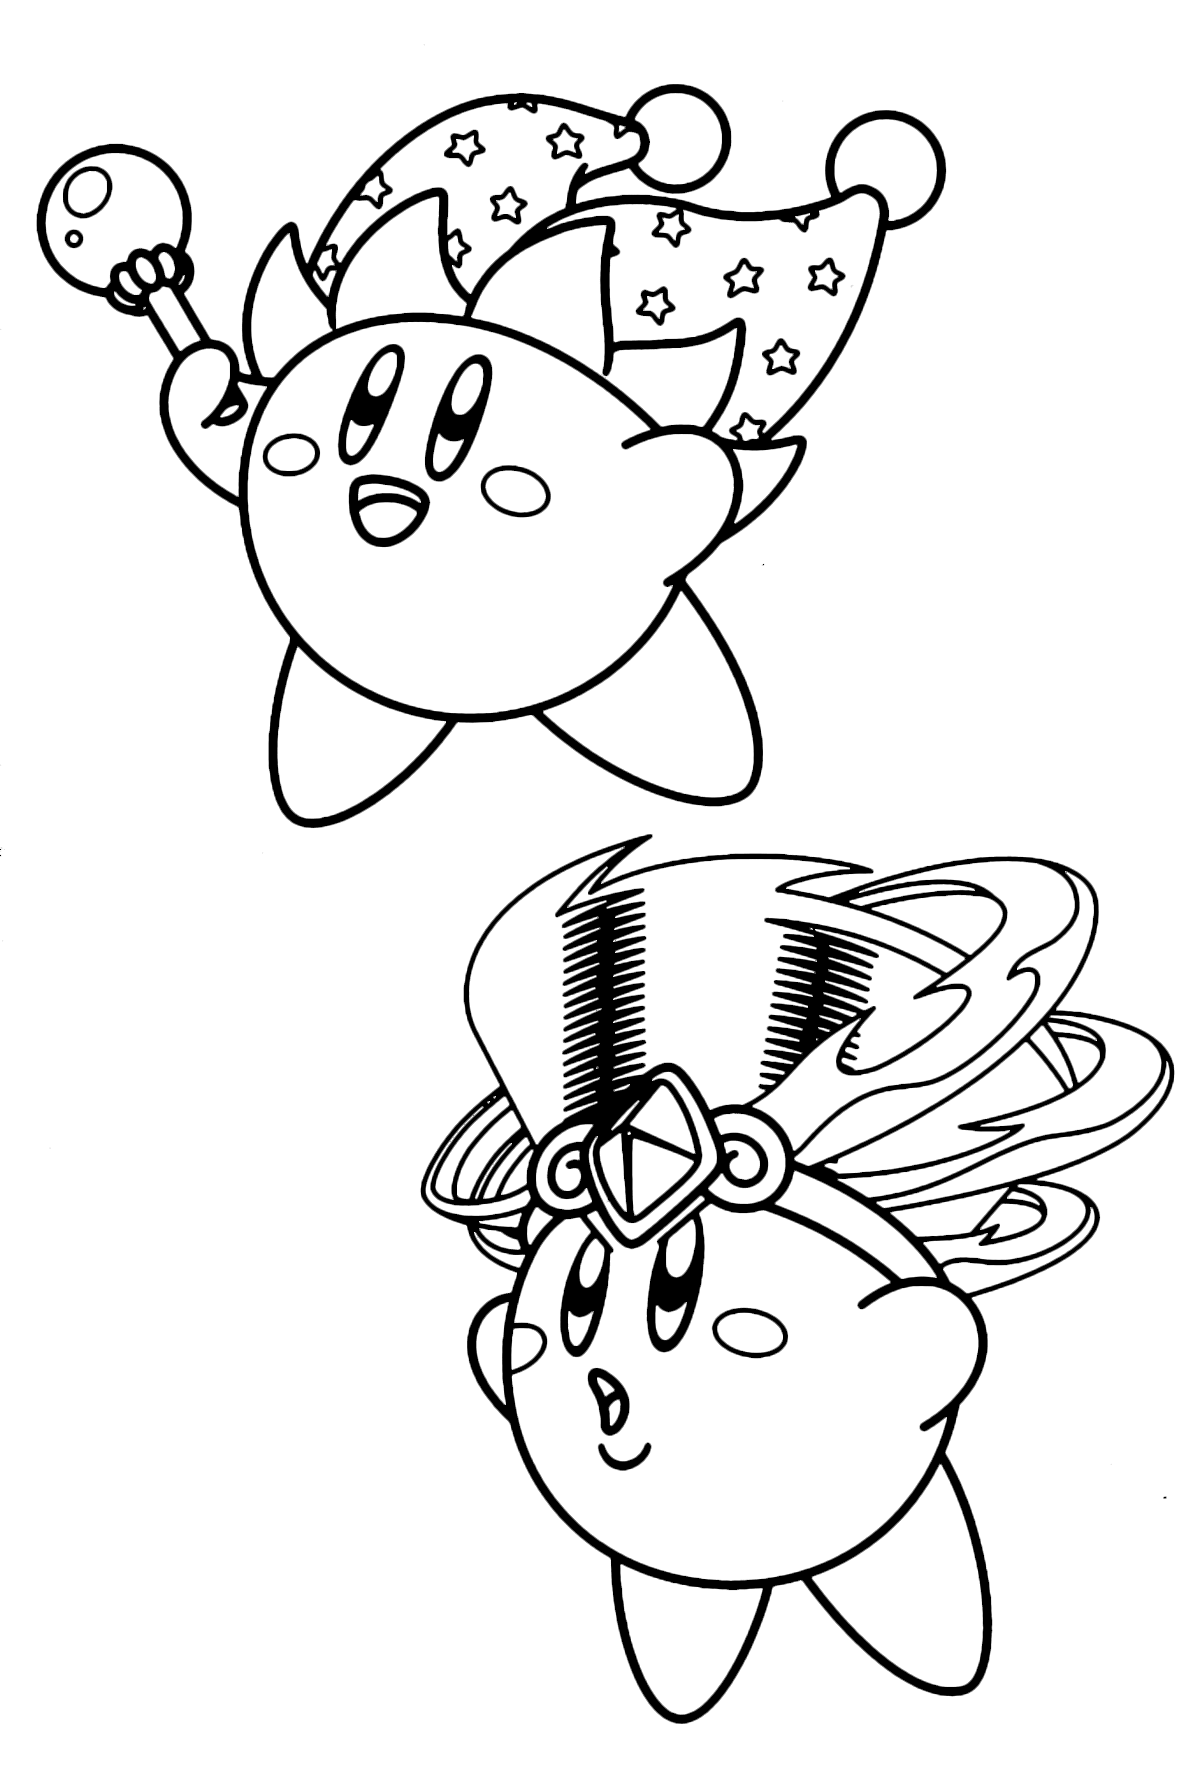 Kirby - Kirby specchio e Kirby tornado